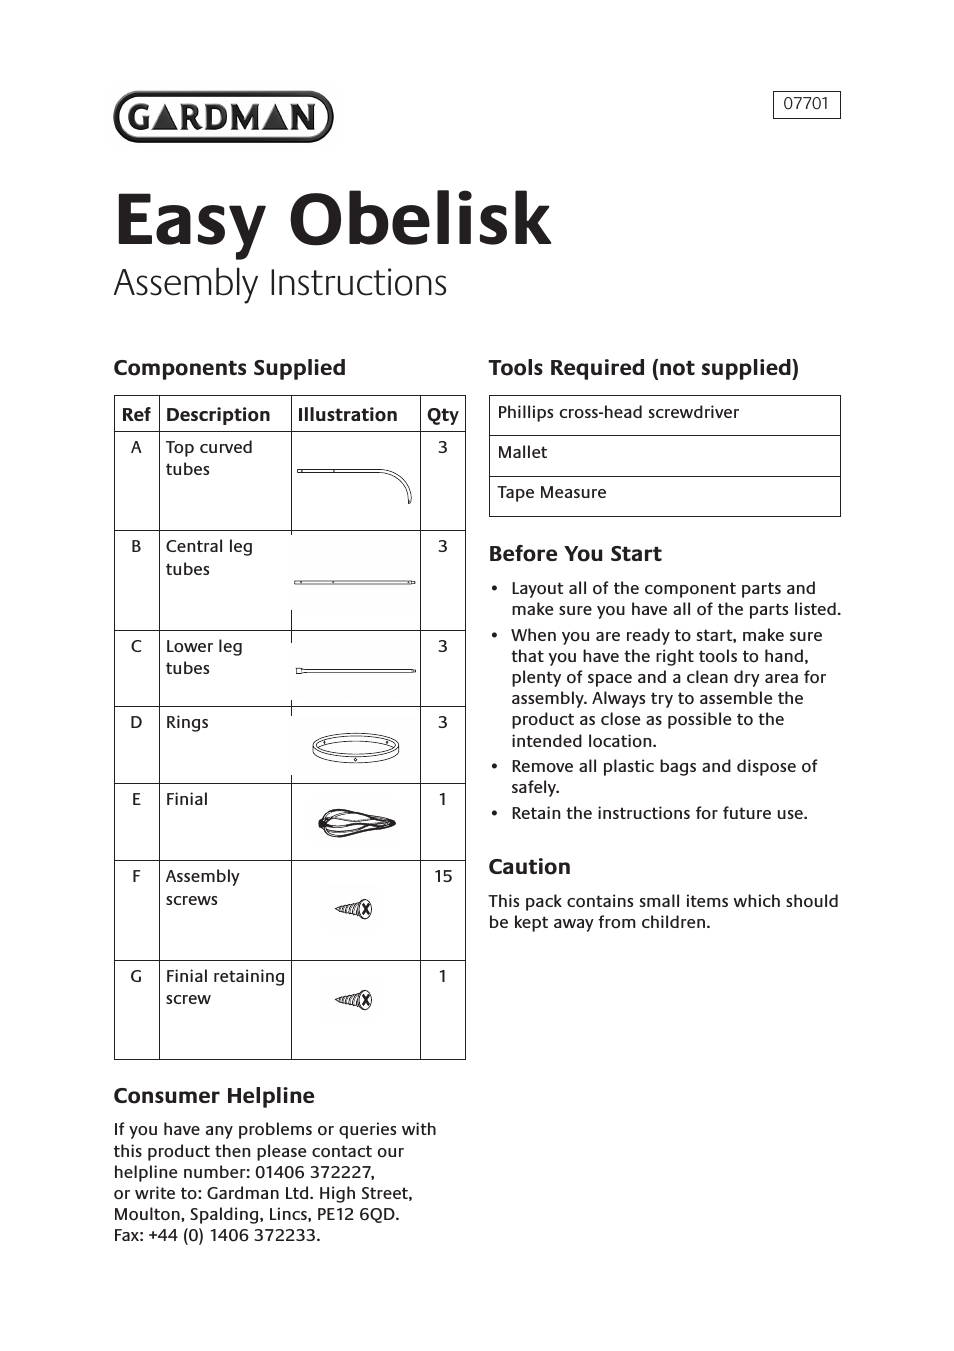 Easy Obelisk